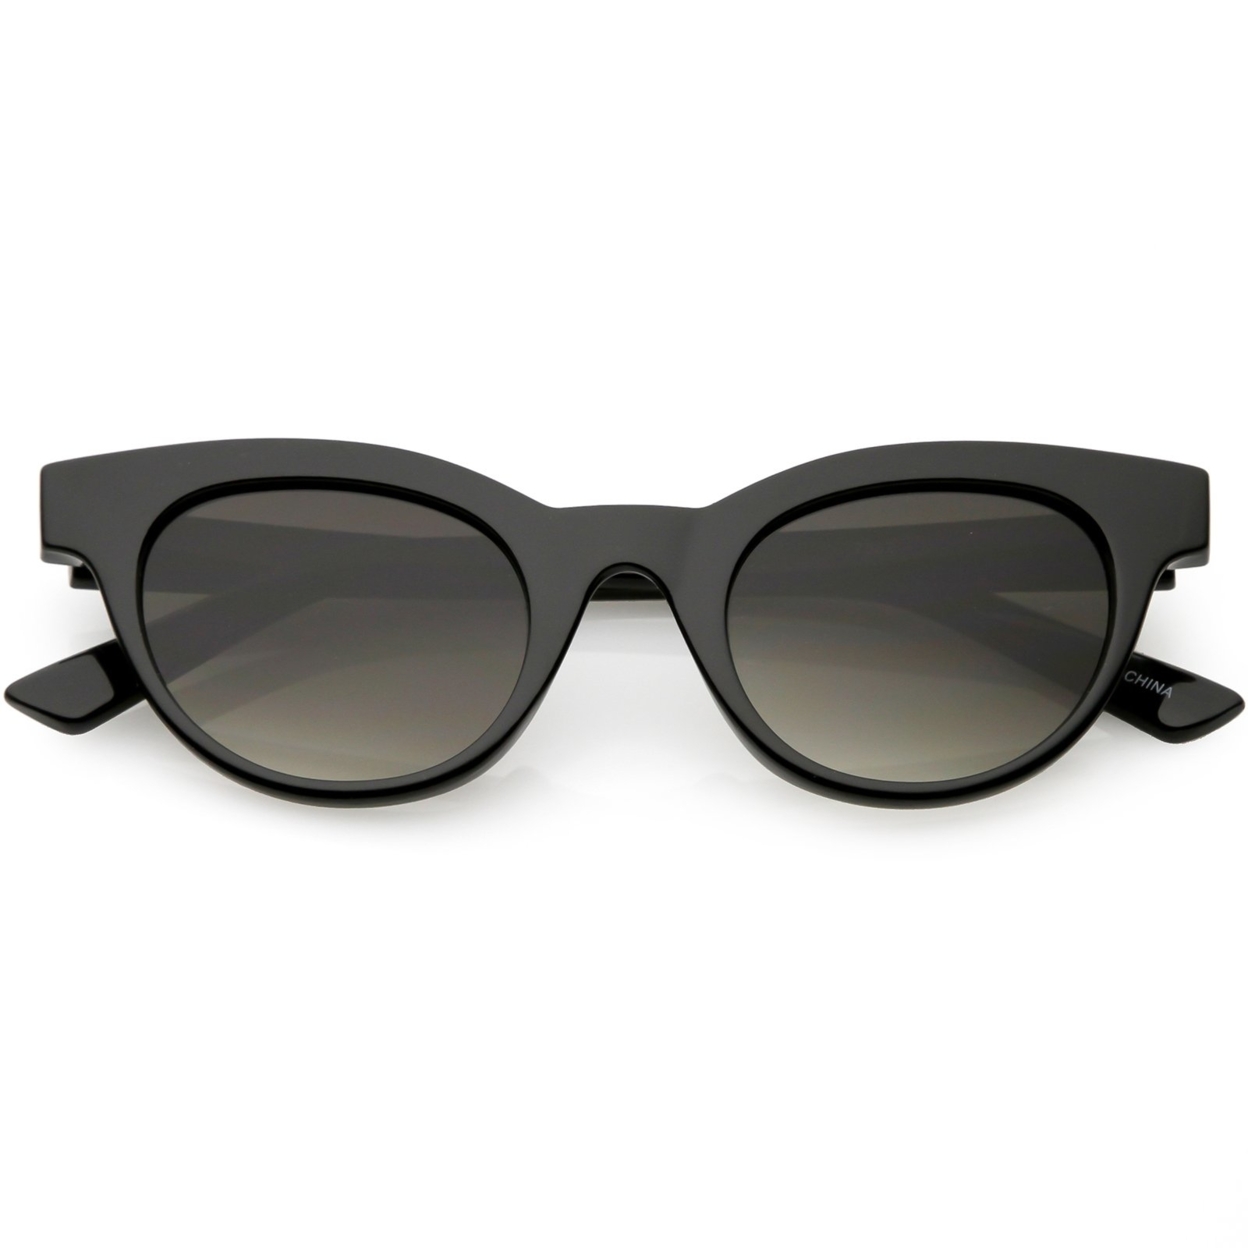 Women's Horn Rimmed Cat Eye Sunglasses Neutral Colored Round Lens Cat Eye Sunglasses 47mm - Matte Black / Smoke